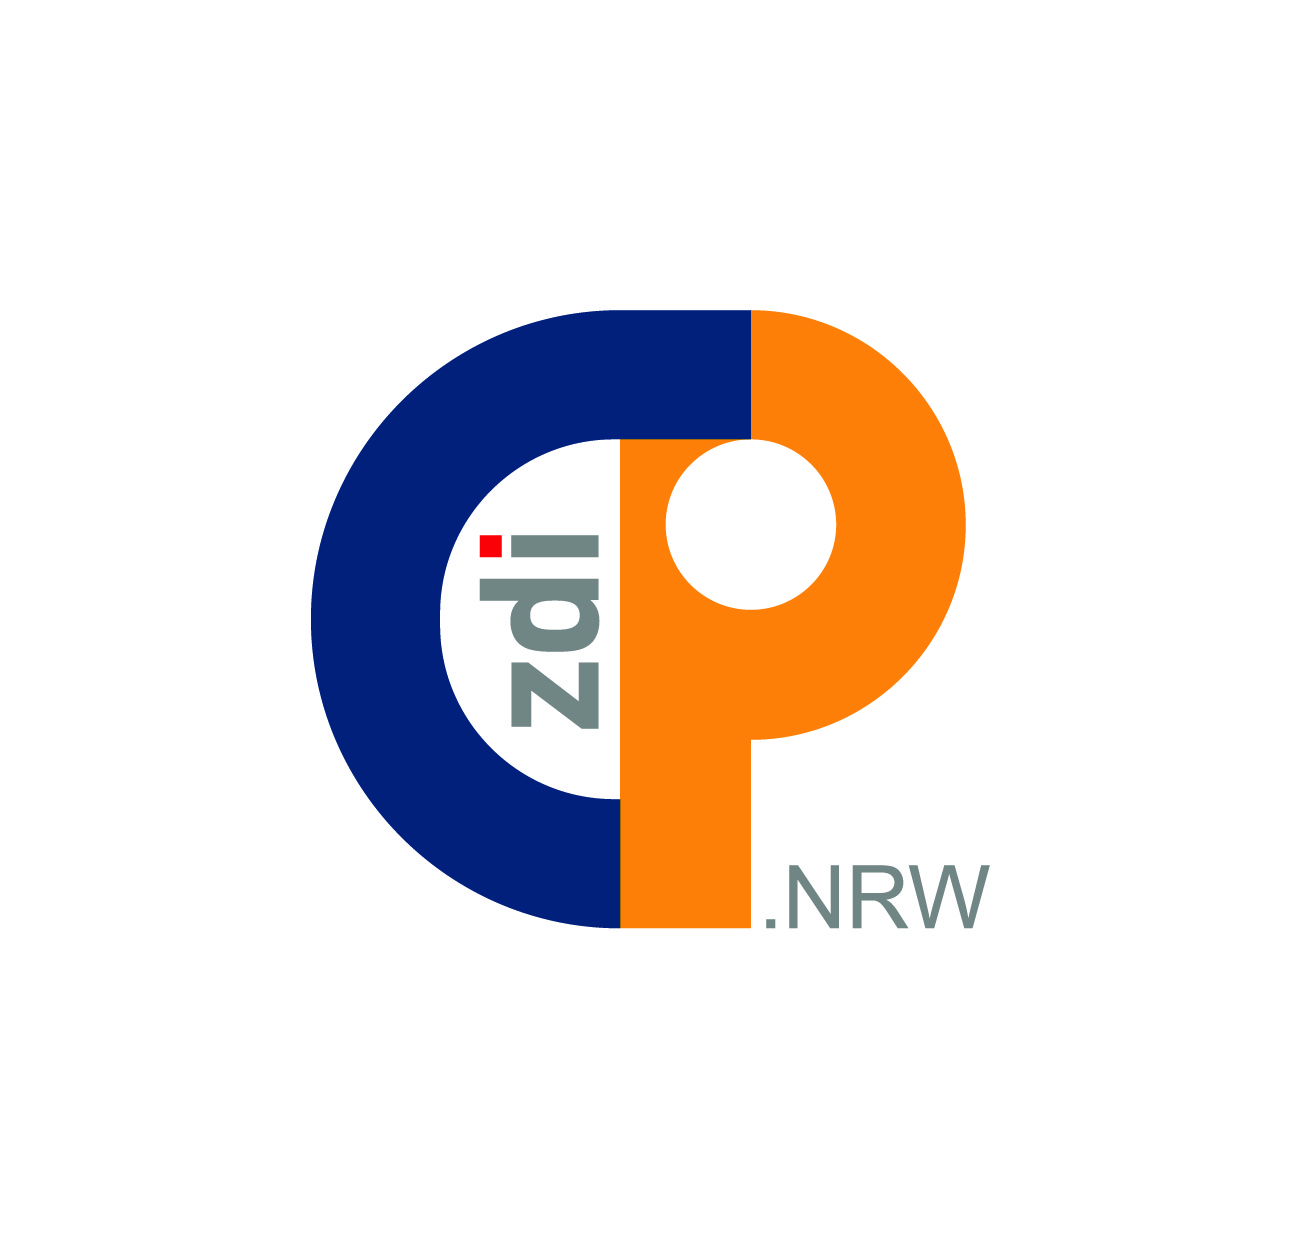 Die Grafik zeigt das neue Logo der zdi-Community-Plattform. Es zeigt ein dunkelblaues C, das in ein orangefarbenes P übergeht. Im Weißraum zwischen C und P steht zdi in grau, der Punkt auf dem i ist rot. In kleinen grauen Buchstaben unten neben dem P steht NRW.